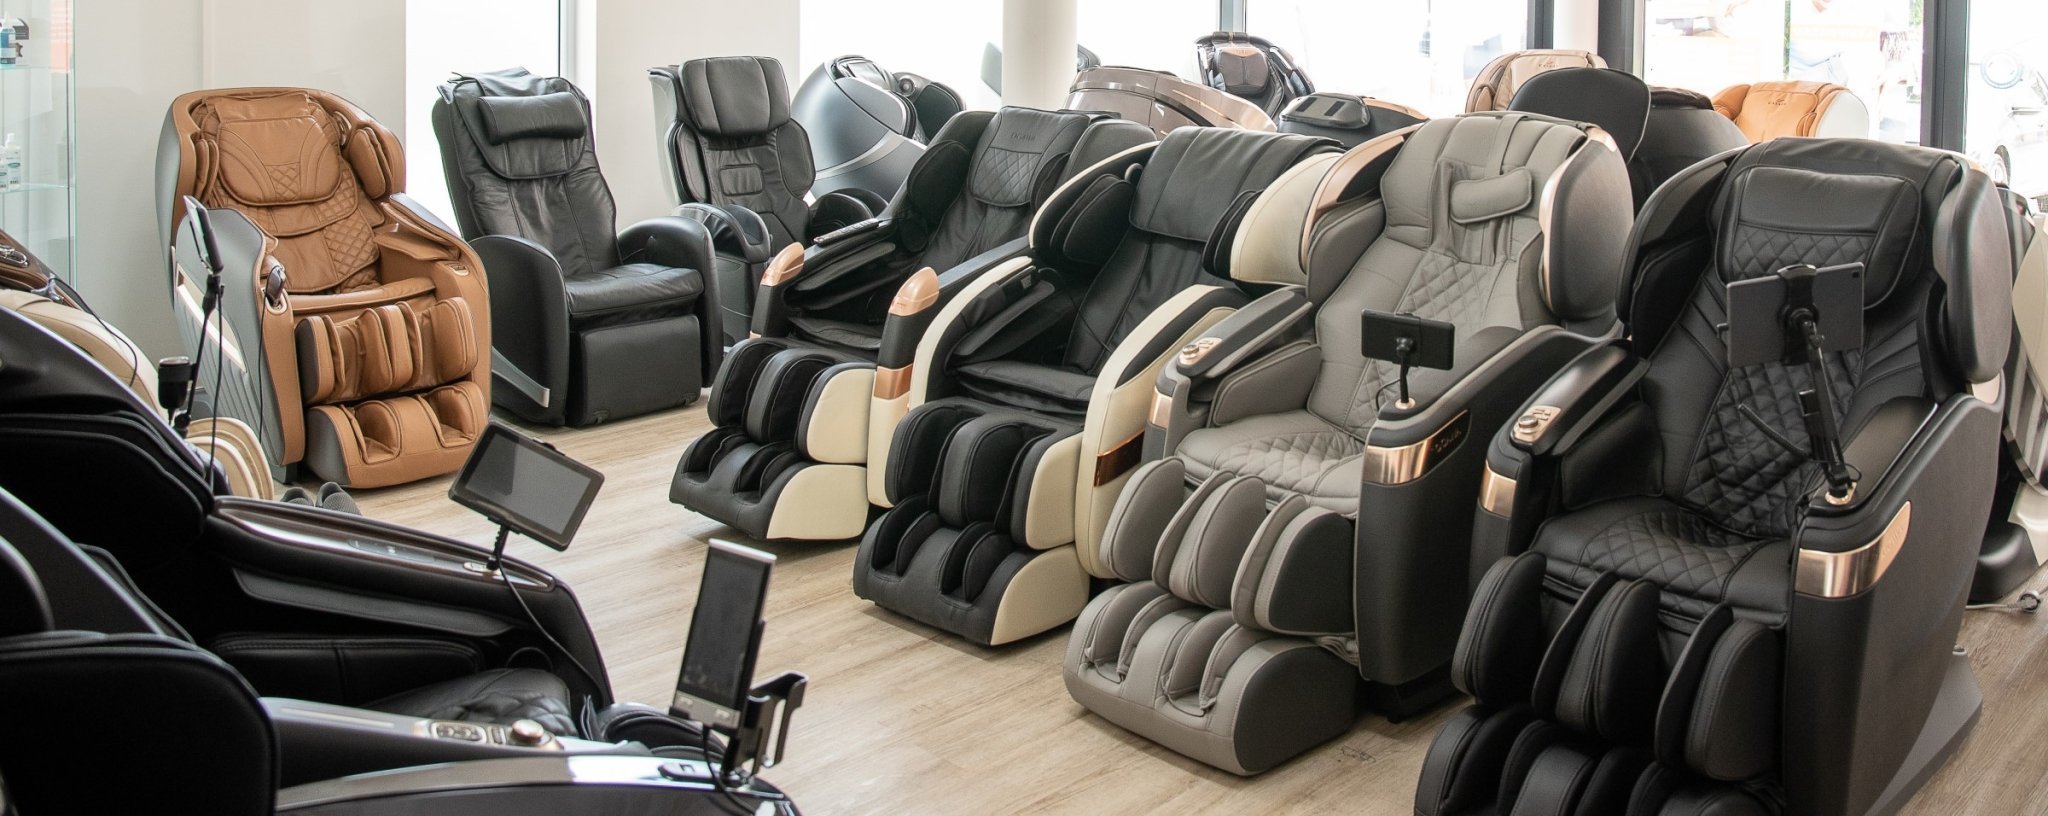 Massage chair exhibits - Massage chair world